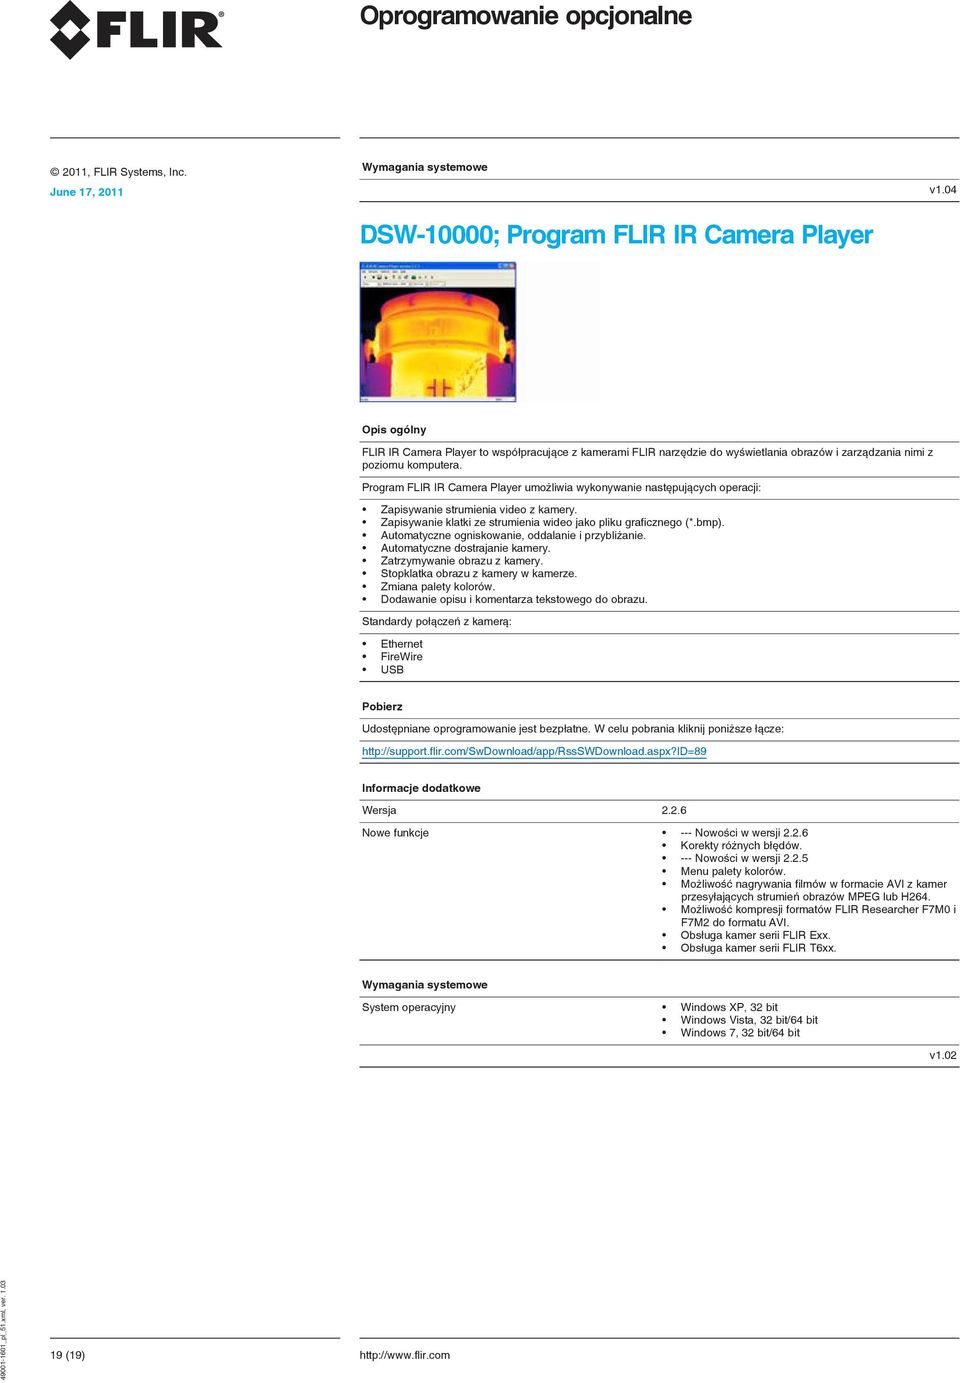 Program FLIR IR Camera Player umożliwia wykonywanie następujących operacji: Zapisywanie strumienia video z kamery. Zapisywanie klatki ze strumienia wideo jako pliku graficznego (*.bmp).